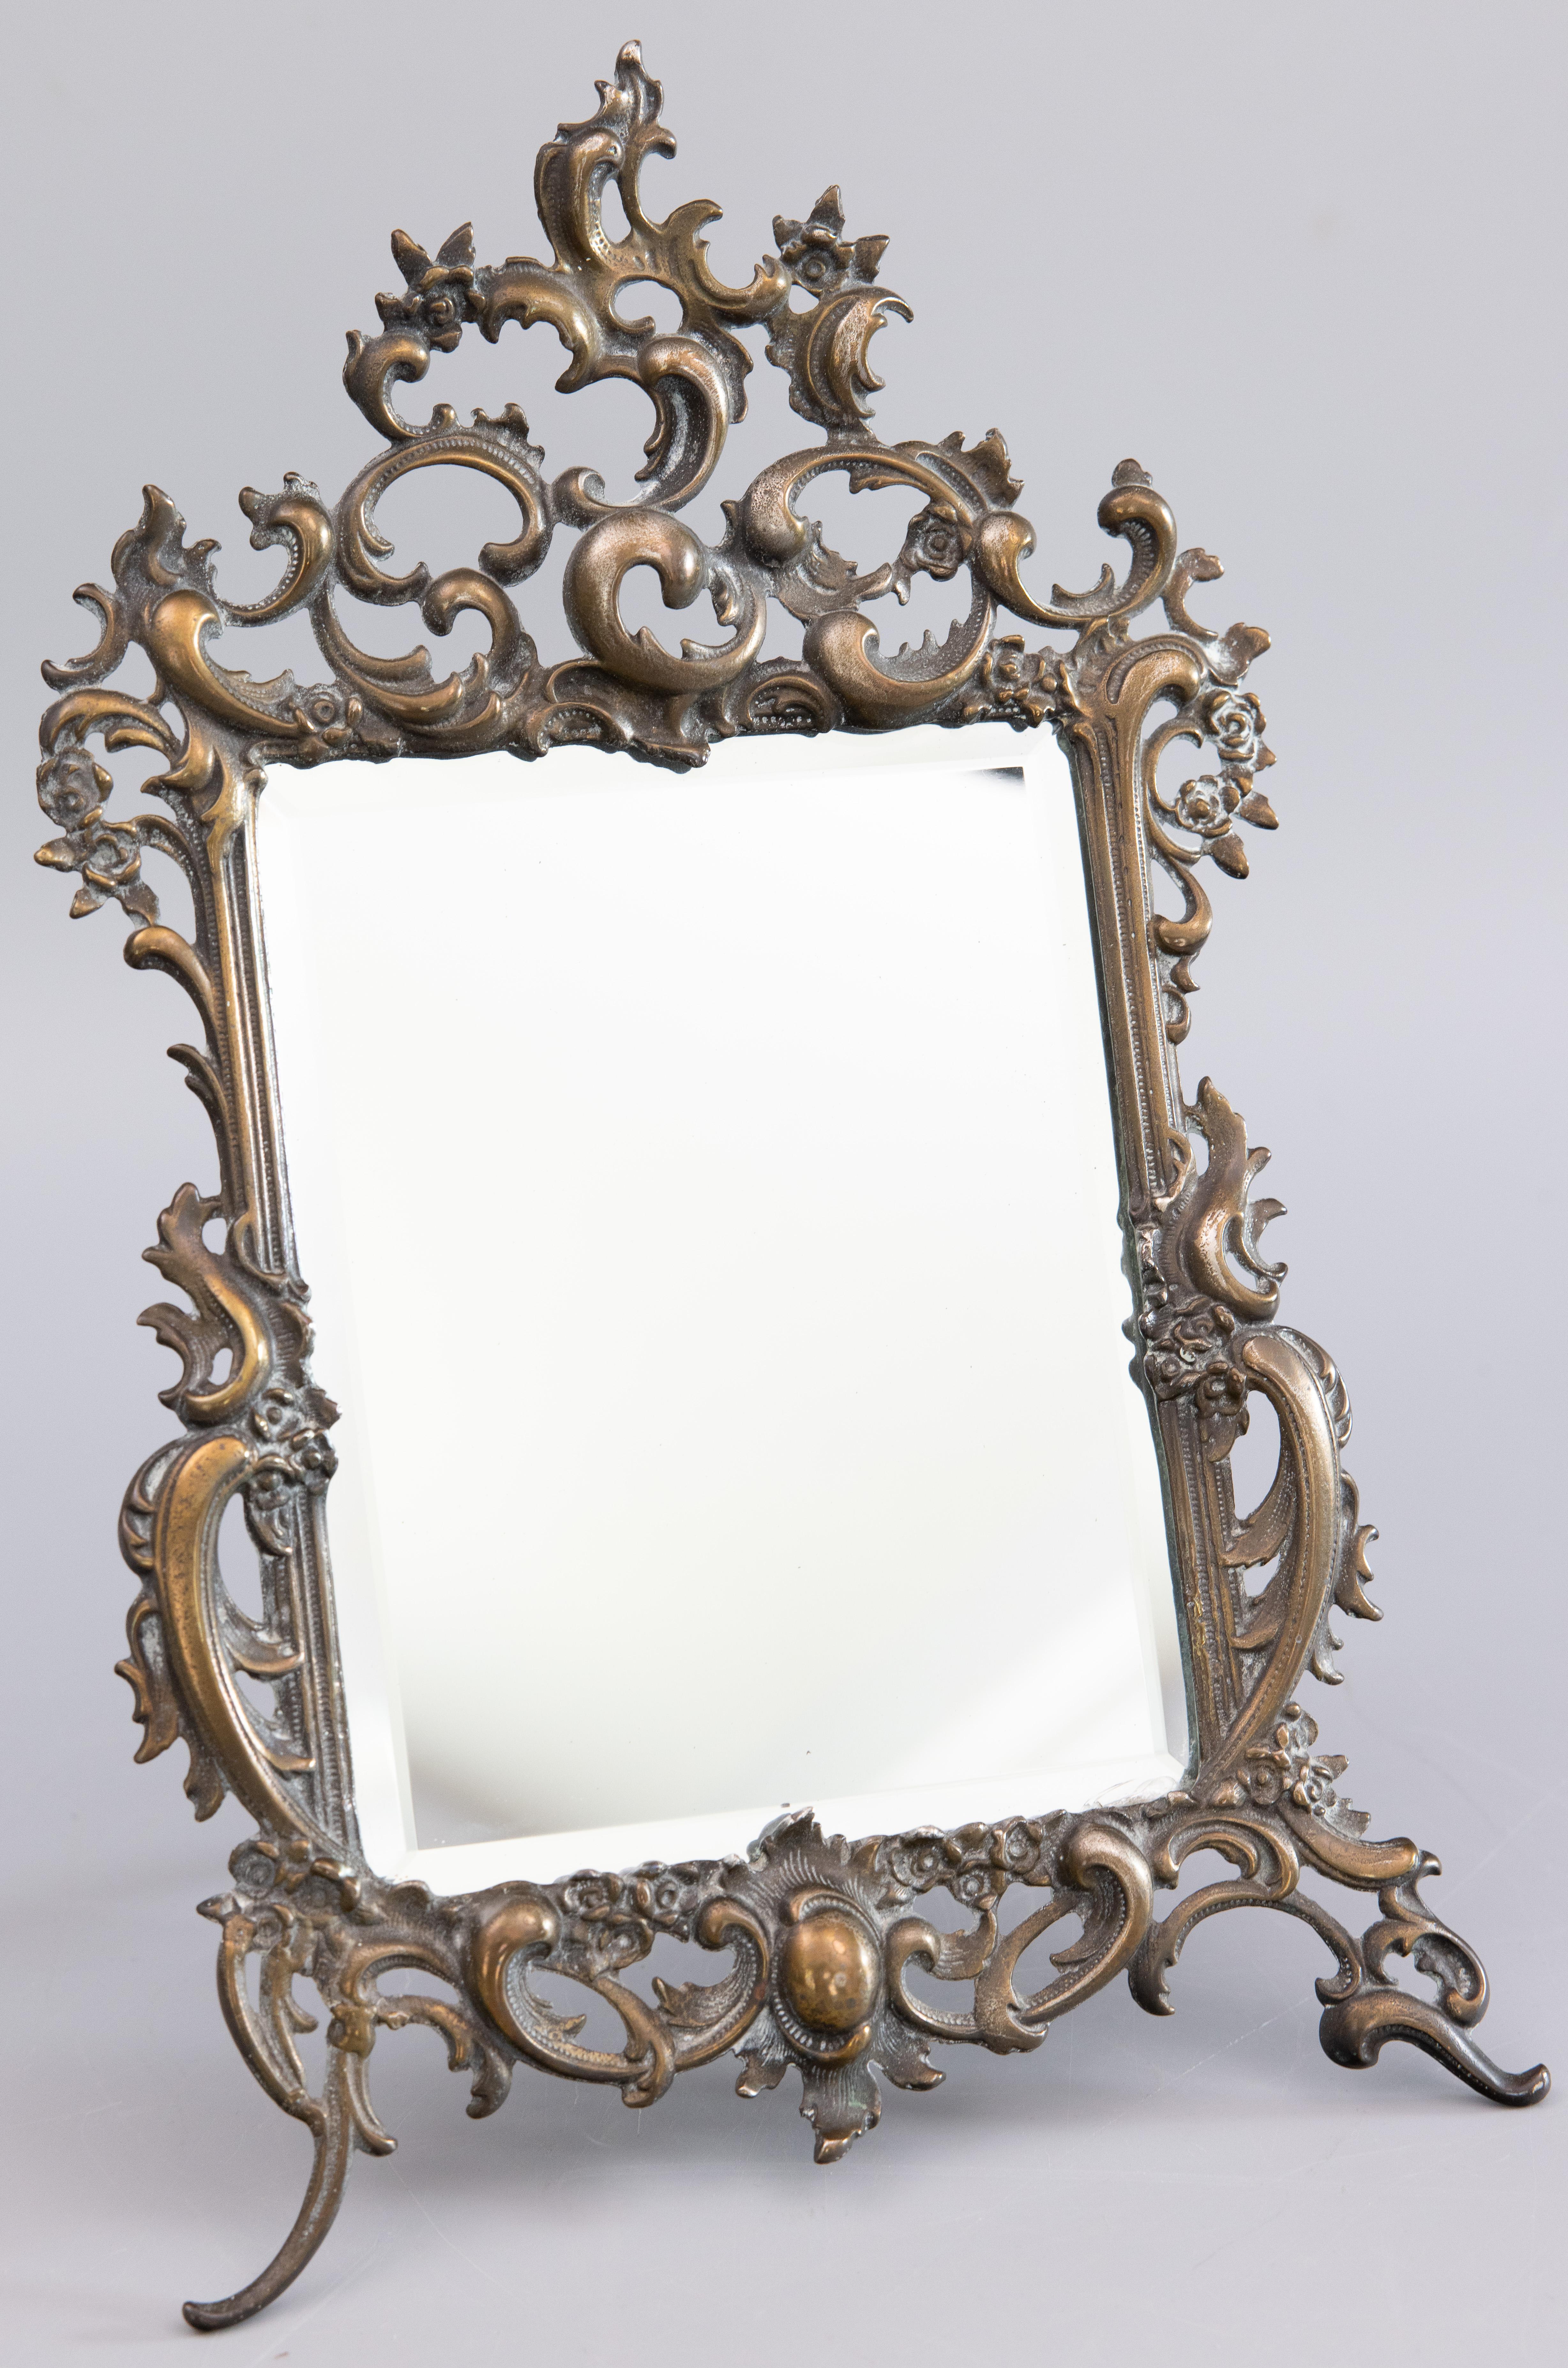 Eine herrliche antike Französisch Rokoko-Stil Messing Tischplatte Kommode oder Eitelkeit Staffelei zurück Spiegel mit einem verzierten Scroll Grenze, um 1900. Dieser schöne Spiegel ist gut gemacht und schwer, mit einem Gewicht von 4 Pfund, mit einer